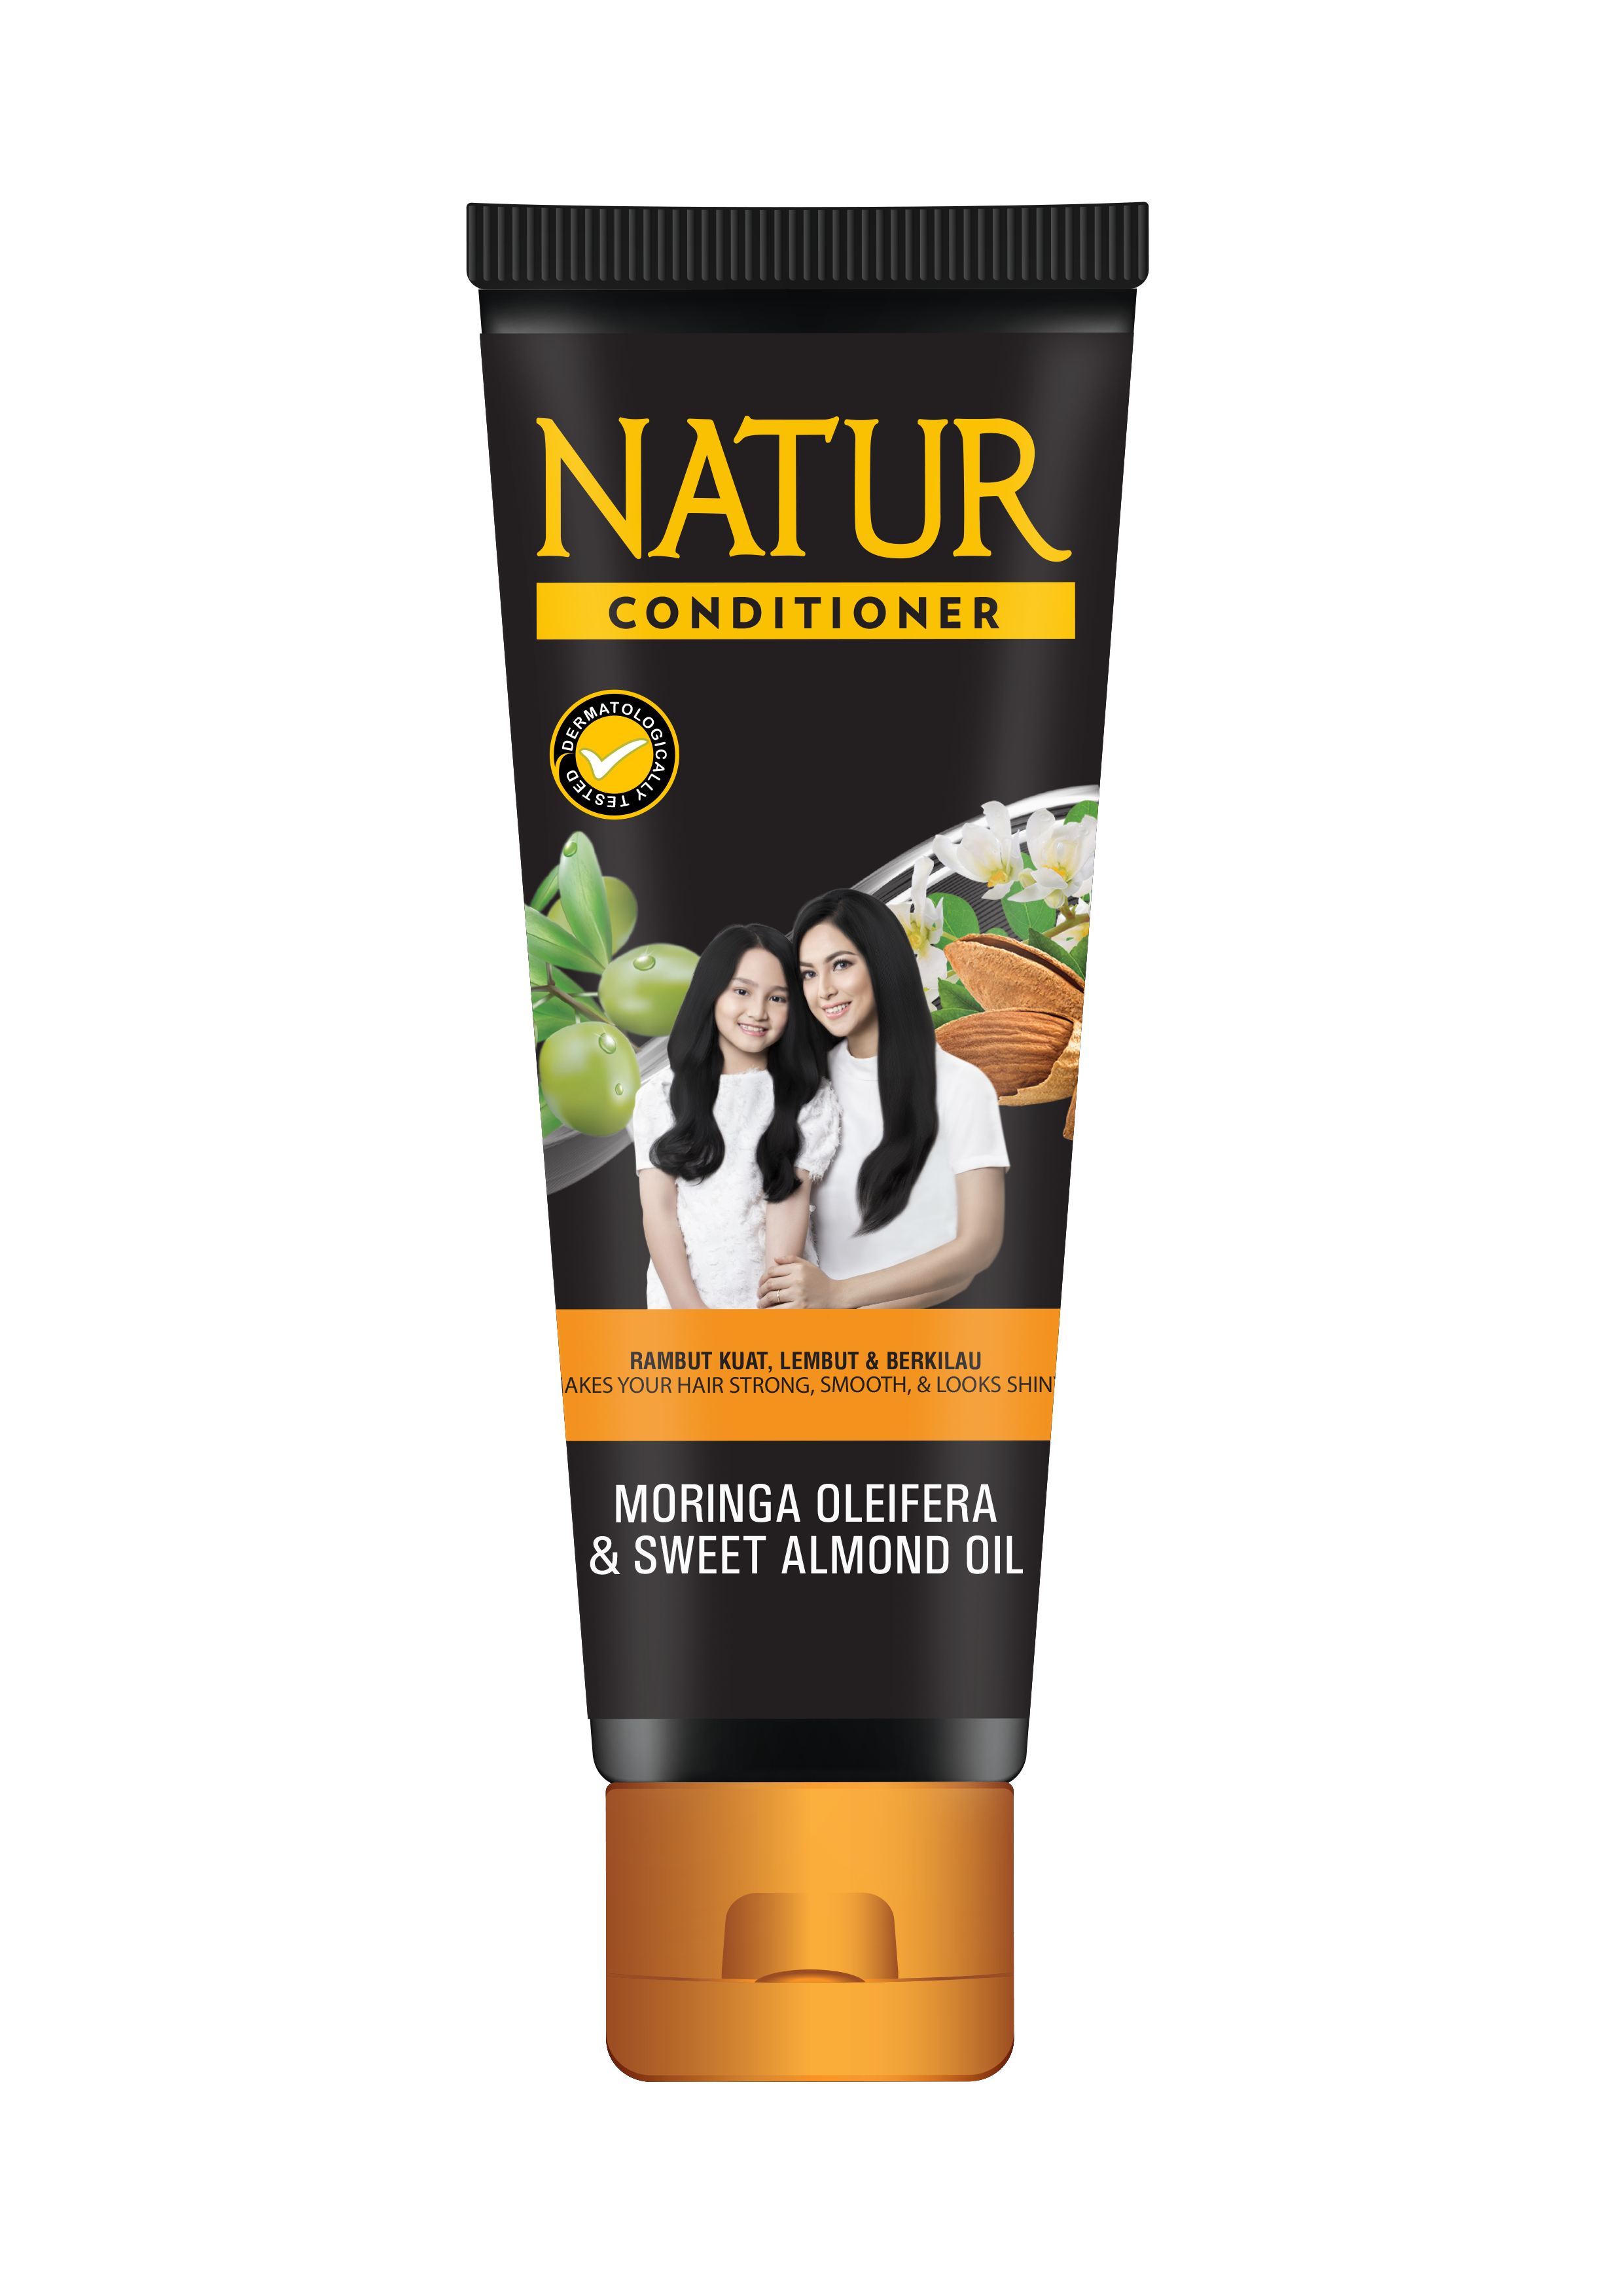 Review Conditioner Natur untuk Rambut Kering: Varian Moringa Oleifera & Olive Oil